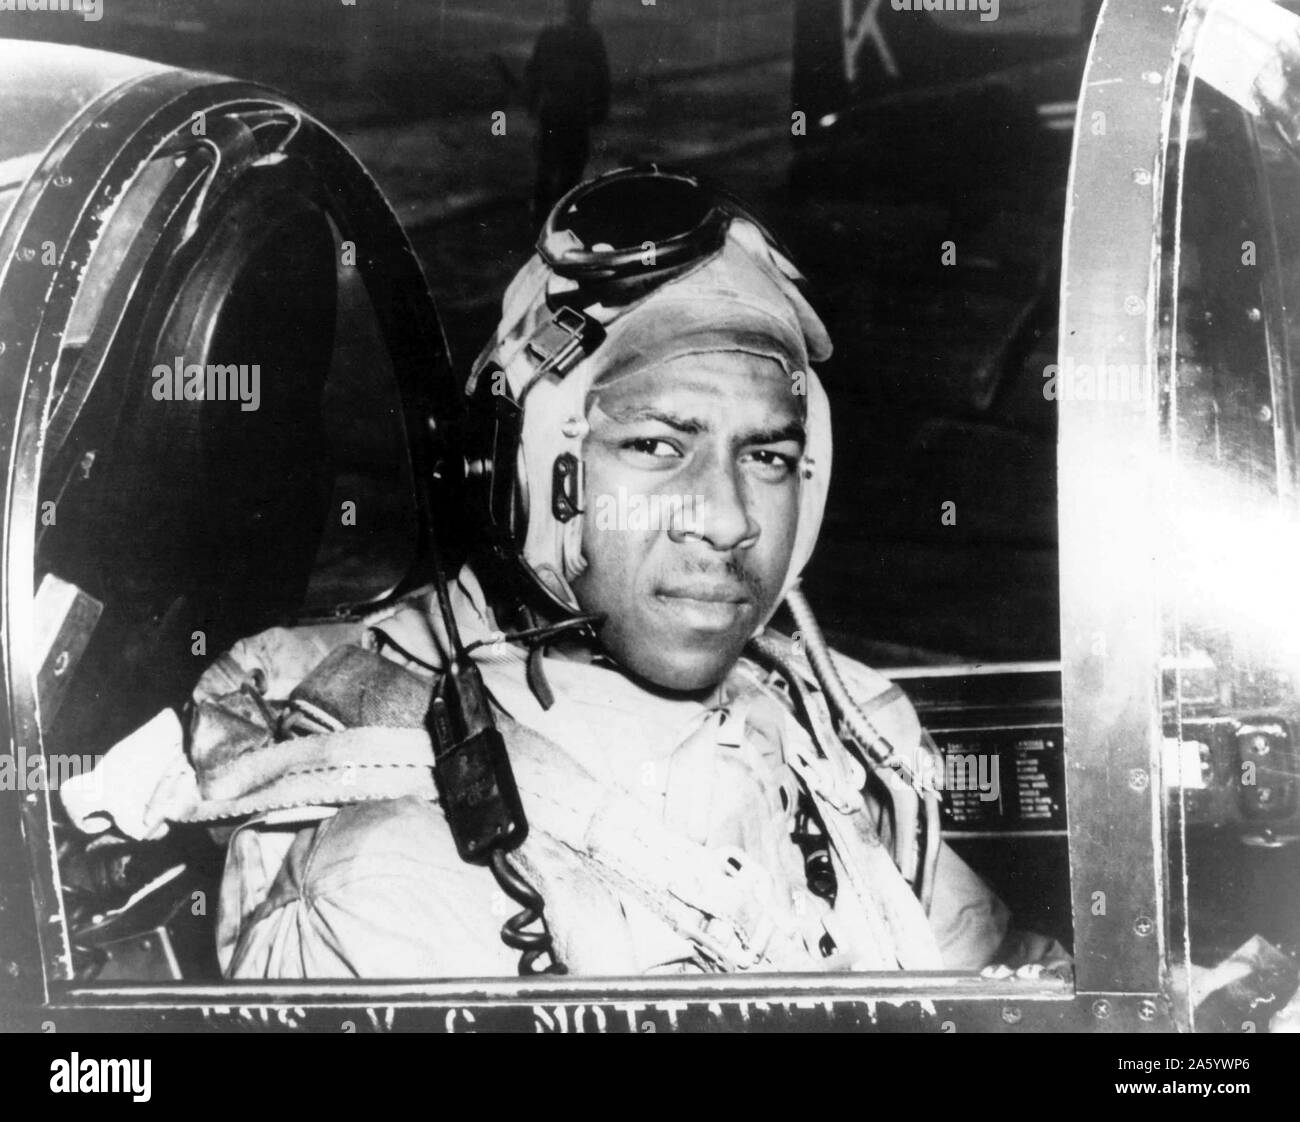 Fotografia di Jesse L. bruno (1926-1950) A Marina degli Stati Uniti Officer e il primo afro-americano di aviatore NEGLI STATI UNITI Marina, nella cabina di pilotaggio di un motore F4U-4 Corsair fighter. Egli è stato il afro-americano di ufficiale della marina ucciso nella guerra coreana. Datata 1950 Foto Stock